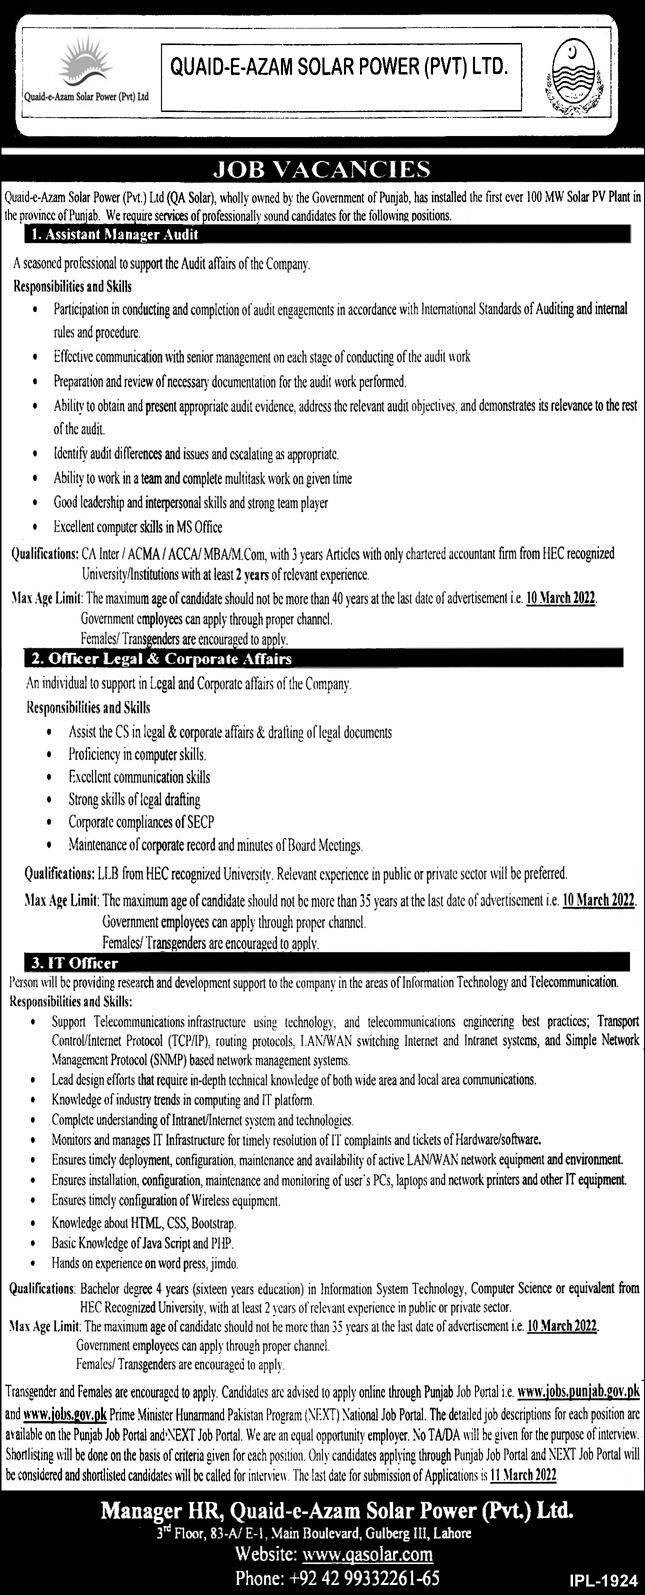 Job Vacancies at Quaid e Azam Solar Power Limited